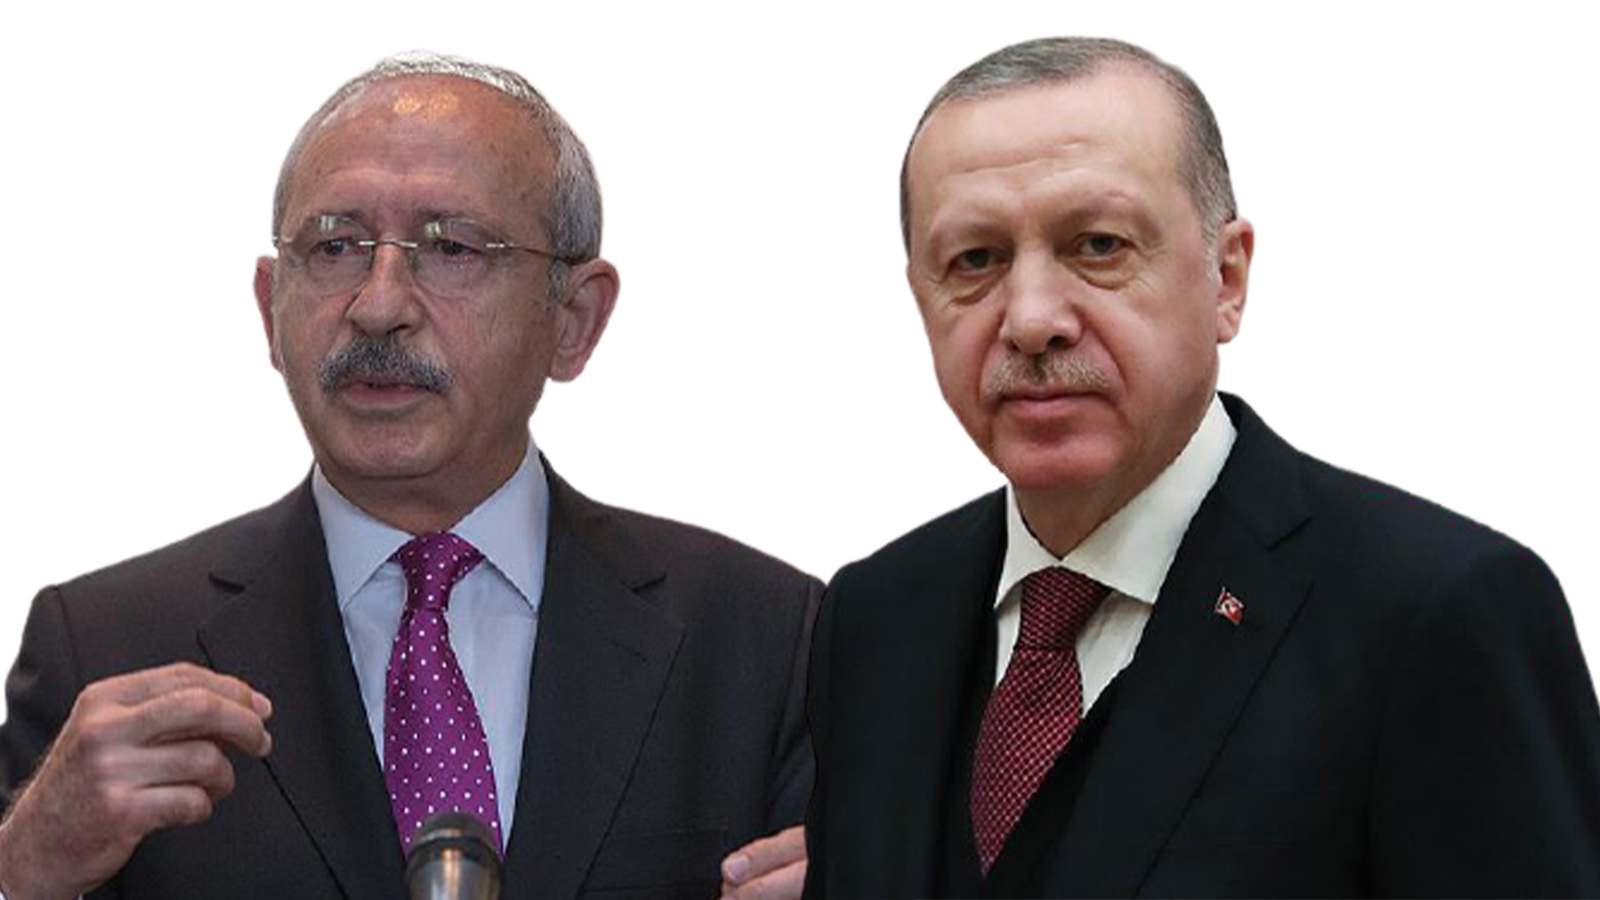 Cumhurbaşkanı Erdoğan'dan Kemal Kılıçdaroğlu'na TÜİK tepkisi: Buralar ciddi kurumlardır, senin gibi ciddiyetsiz değil